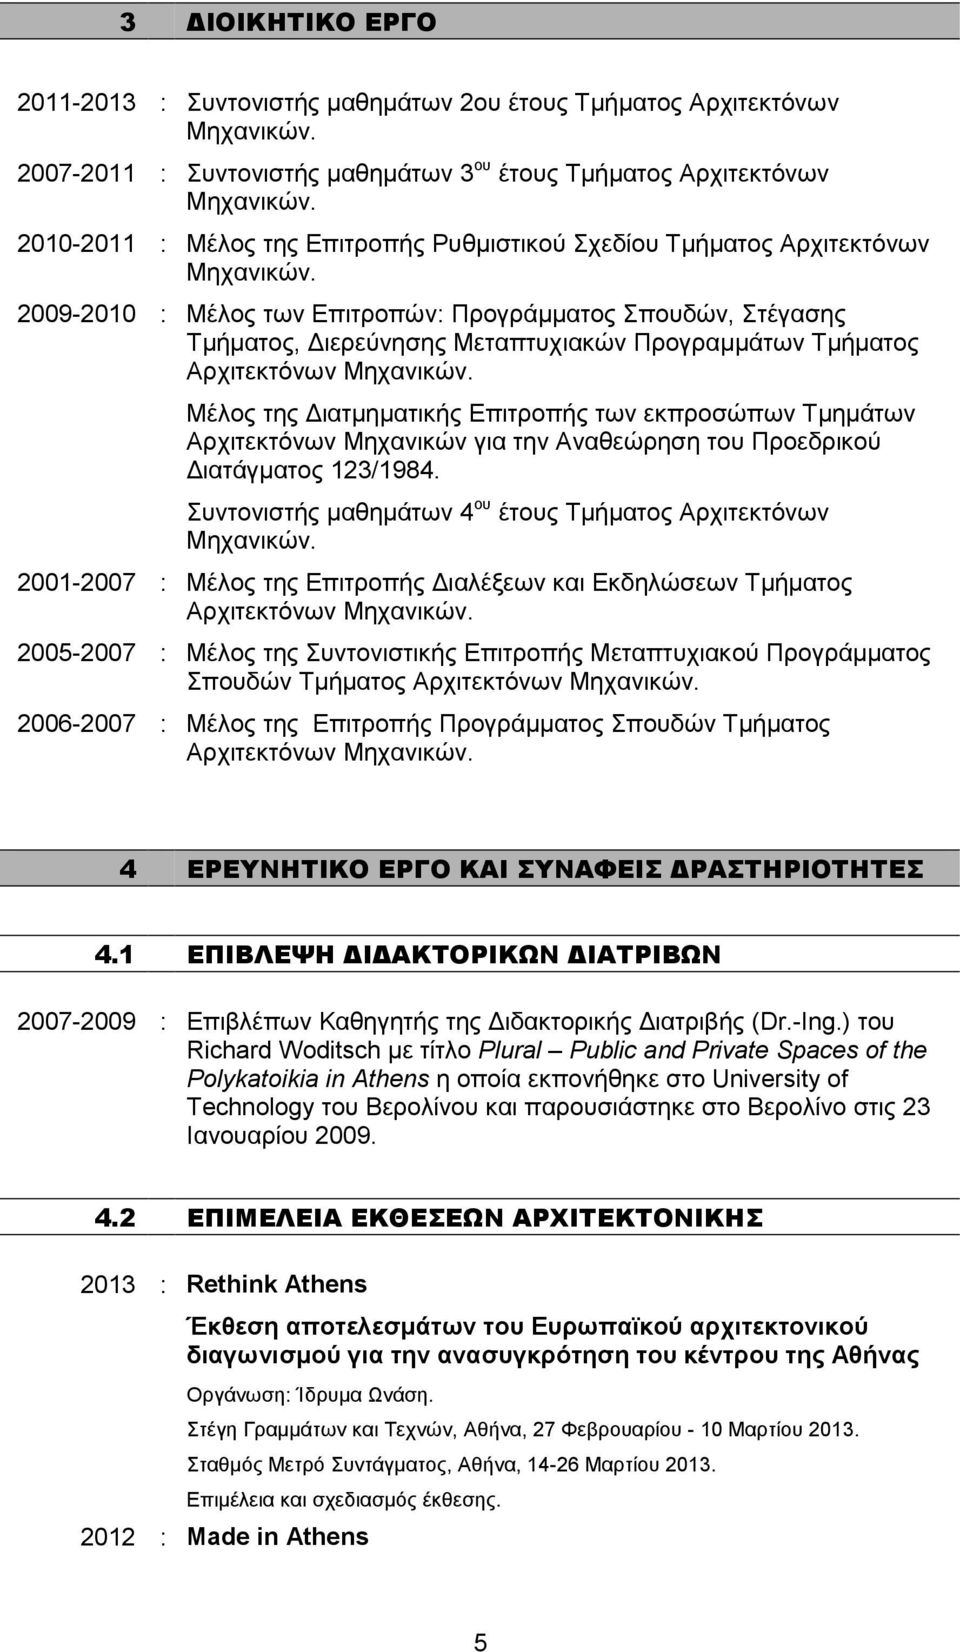 2009-2010 : Μέλος των Επιτροπών: Προγράµµατος Σπουδών, Στέγασης Τµήµατος, ιερεύνησης Μεταπτυχιακών Προγραµµάτων Τµήµατος Αρχιτεκτόνων Μηχανικών.